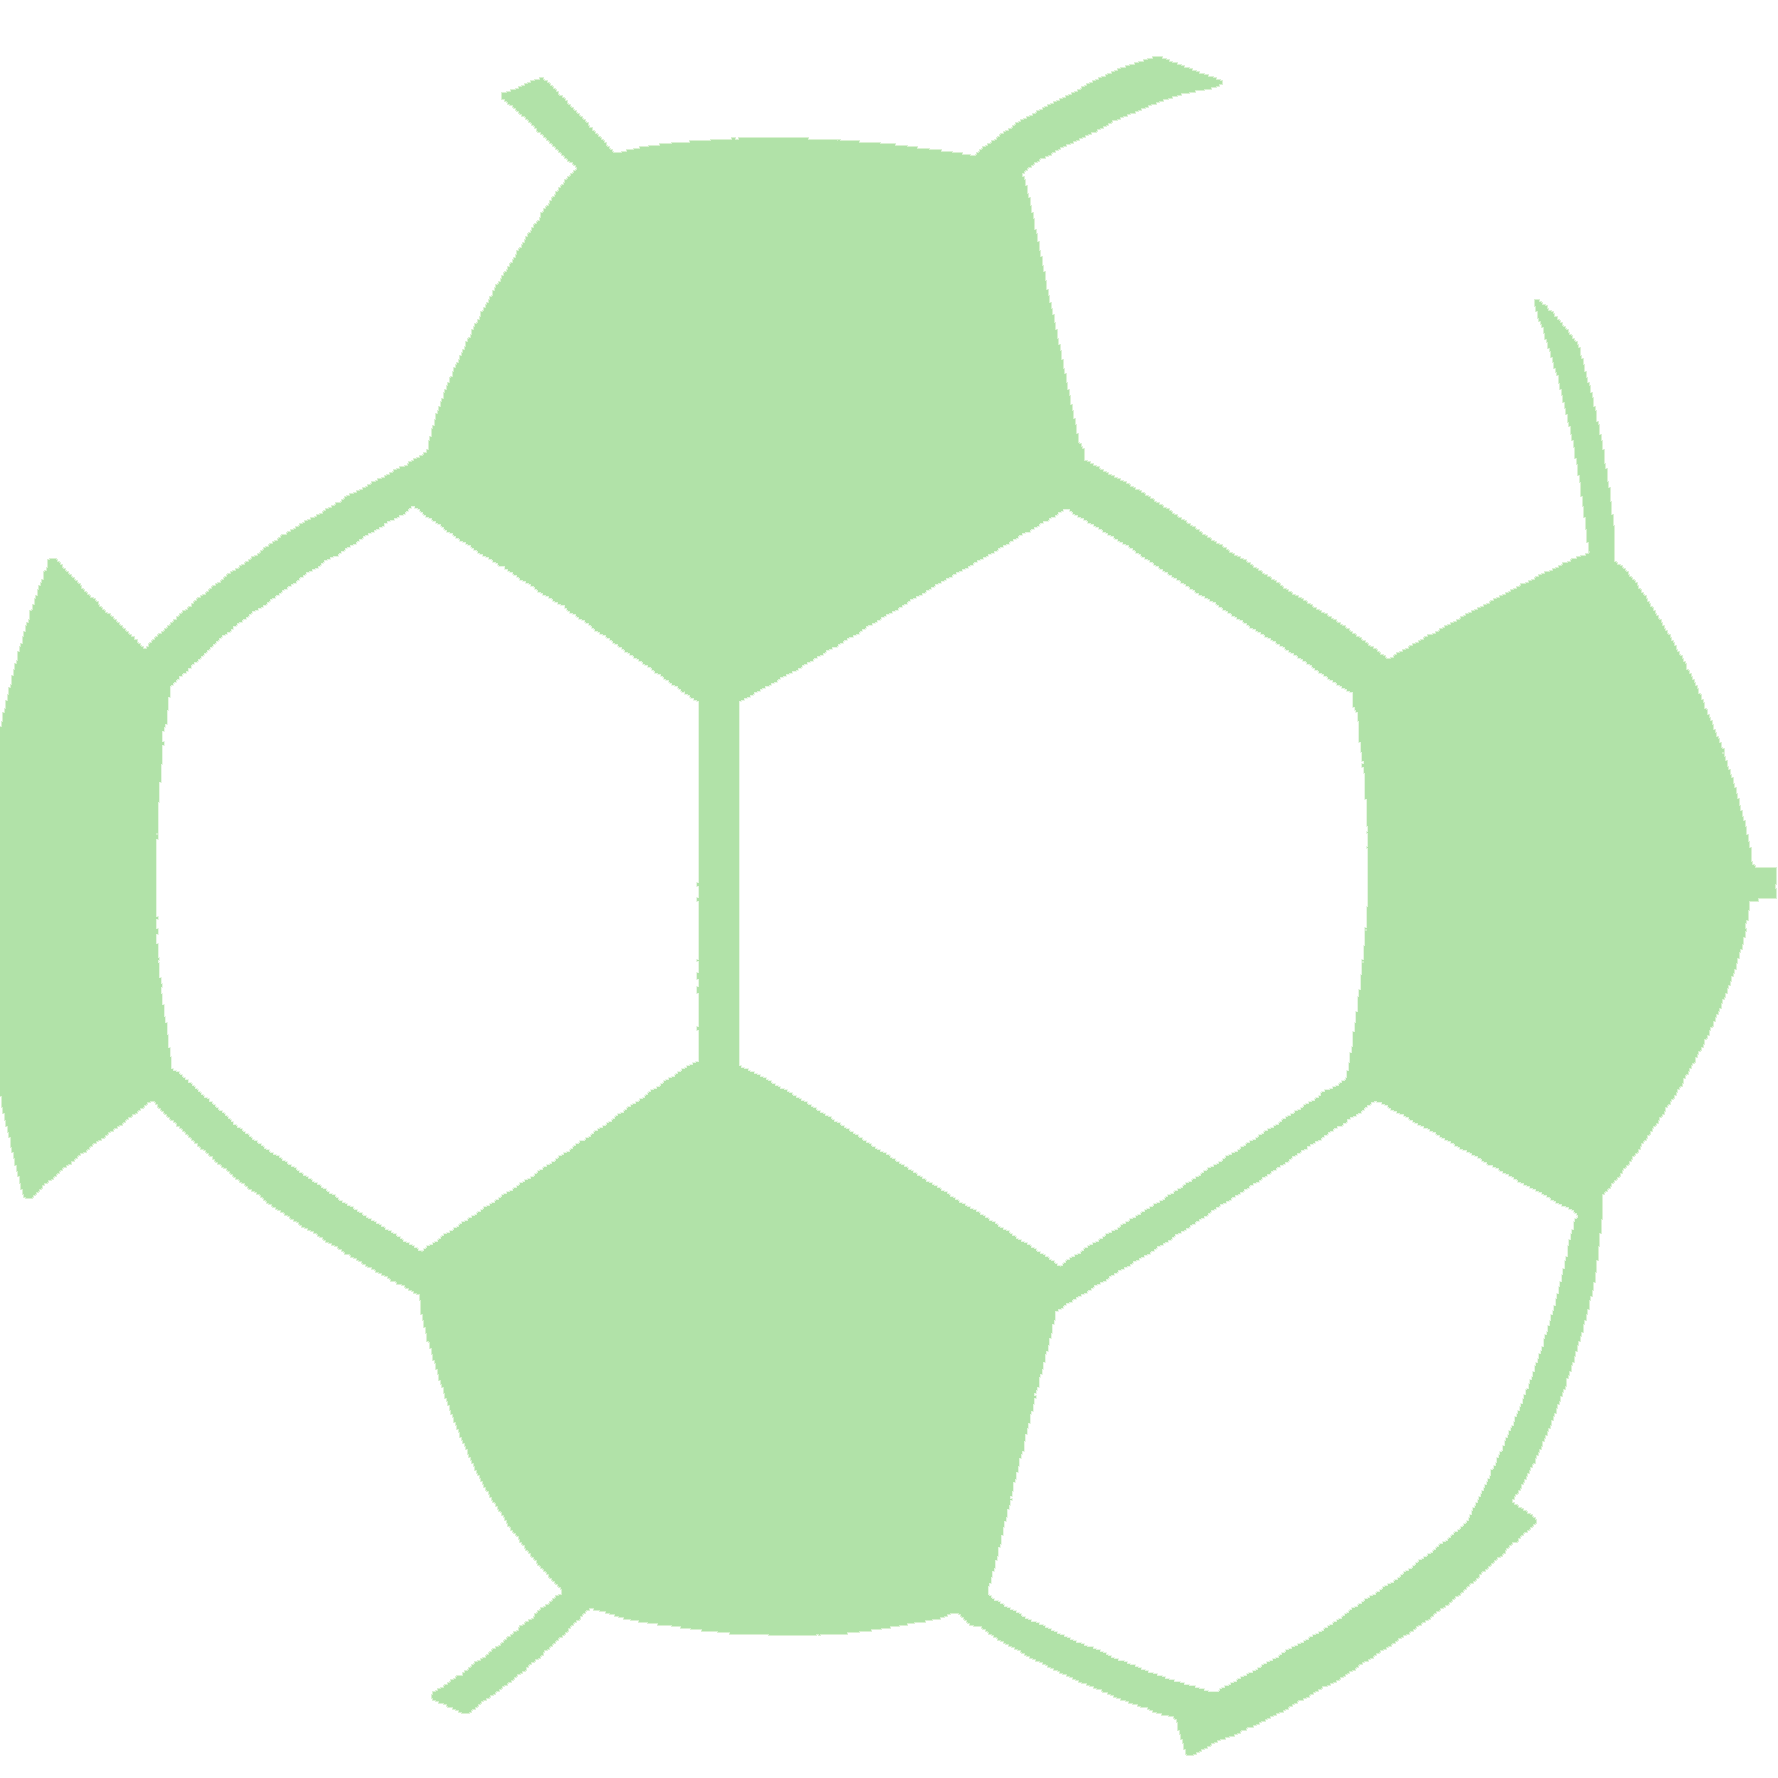 8 EINLEITUNG 1 Einleitung Moderner Fußball bedeutet: Tempo, Dynamik, Härte. Technische Raffinessen und Kabinettstückchen haben Seltenheitswert.